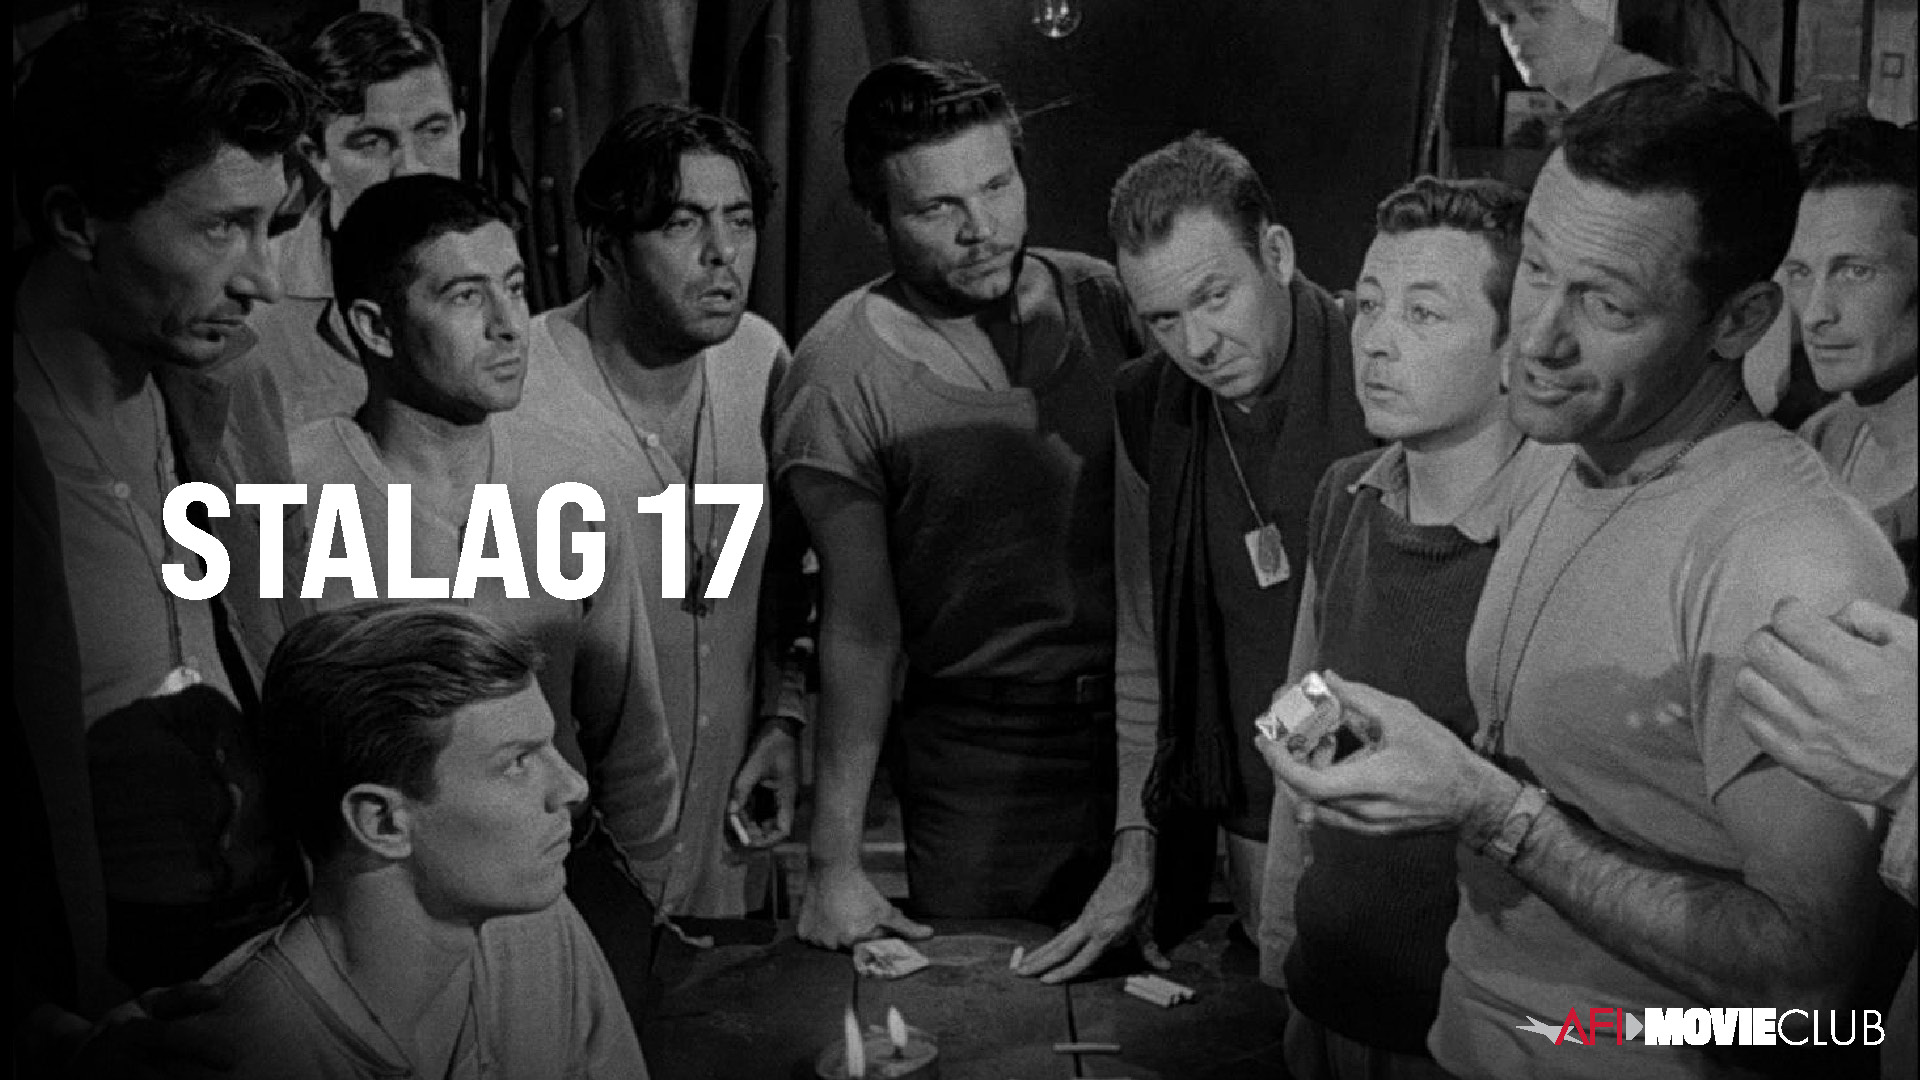 Stalag 17 Film Still - William Holden, Neville Brand, Richard Erdman, Peter Graves, Harvey Lembeck, Gil Stratton, Robert Strauss, and Edmund Trzcinski